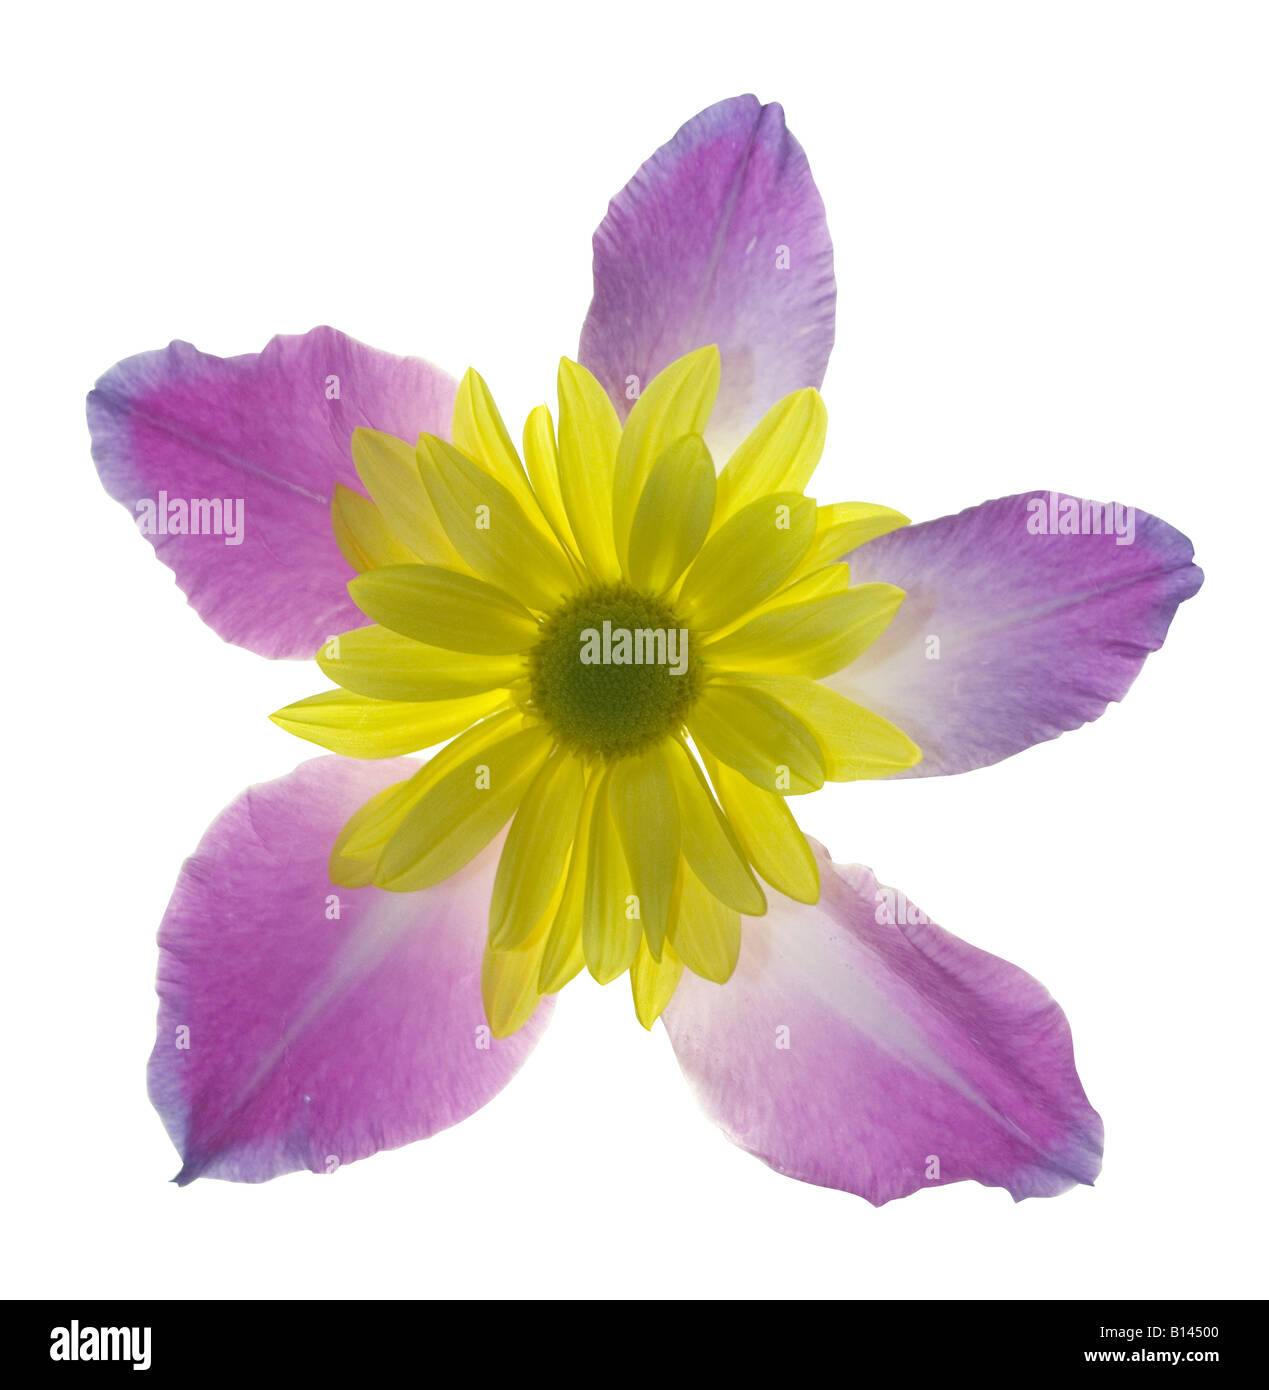 Los pétalos y gladiola púrpura a amarillo daisy se juntan para formar una nueva flor. Foto de stock